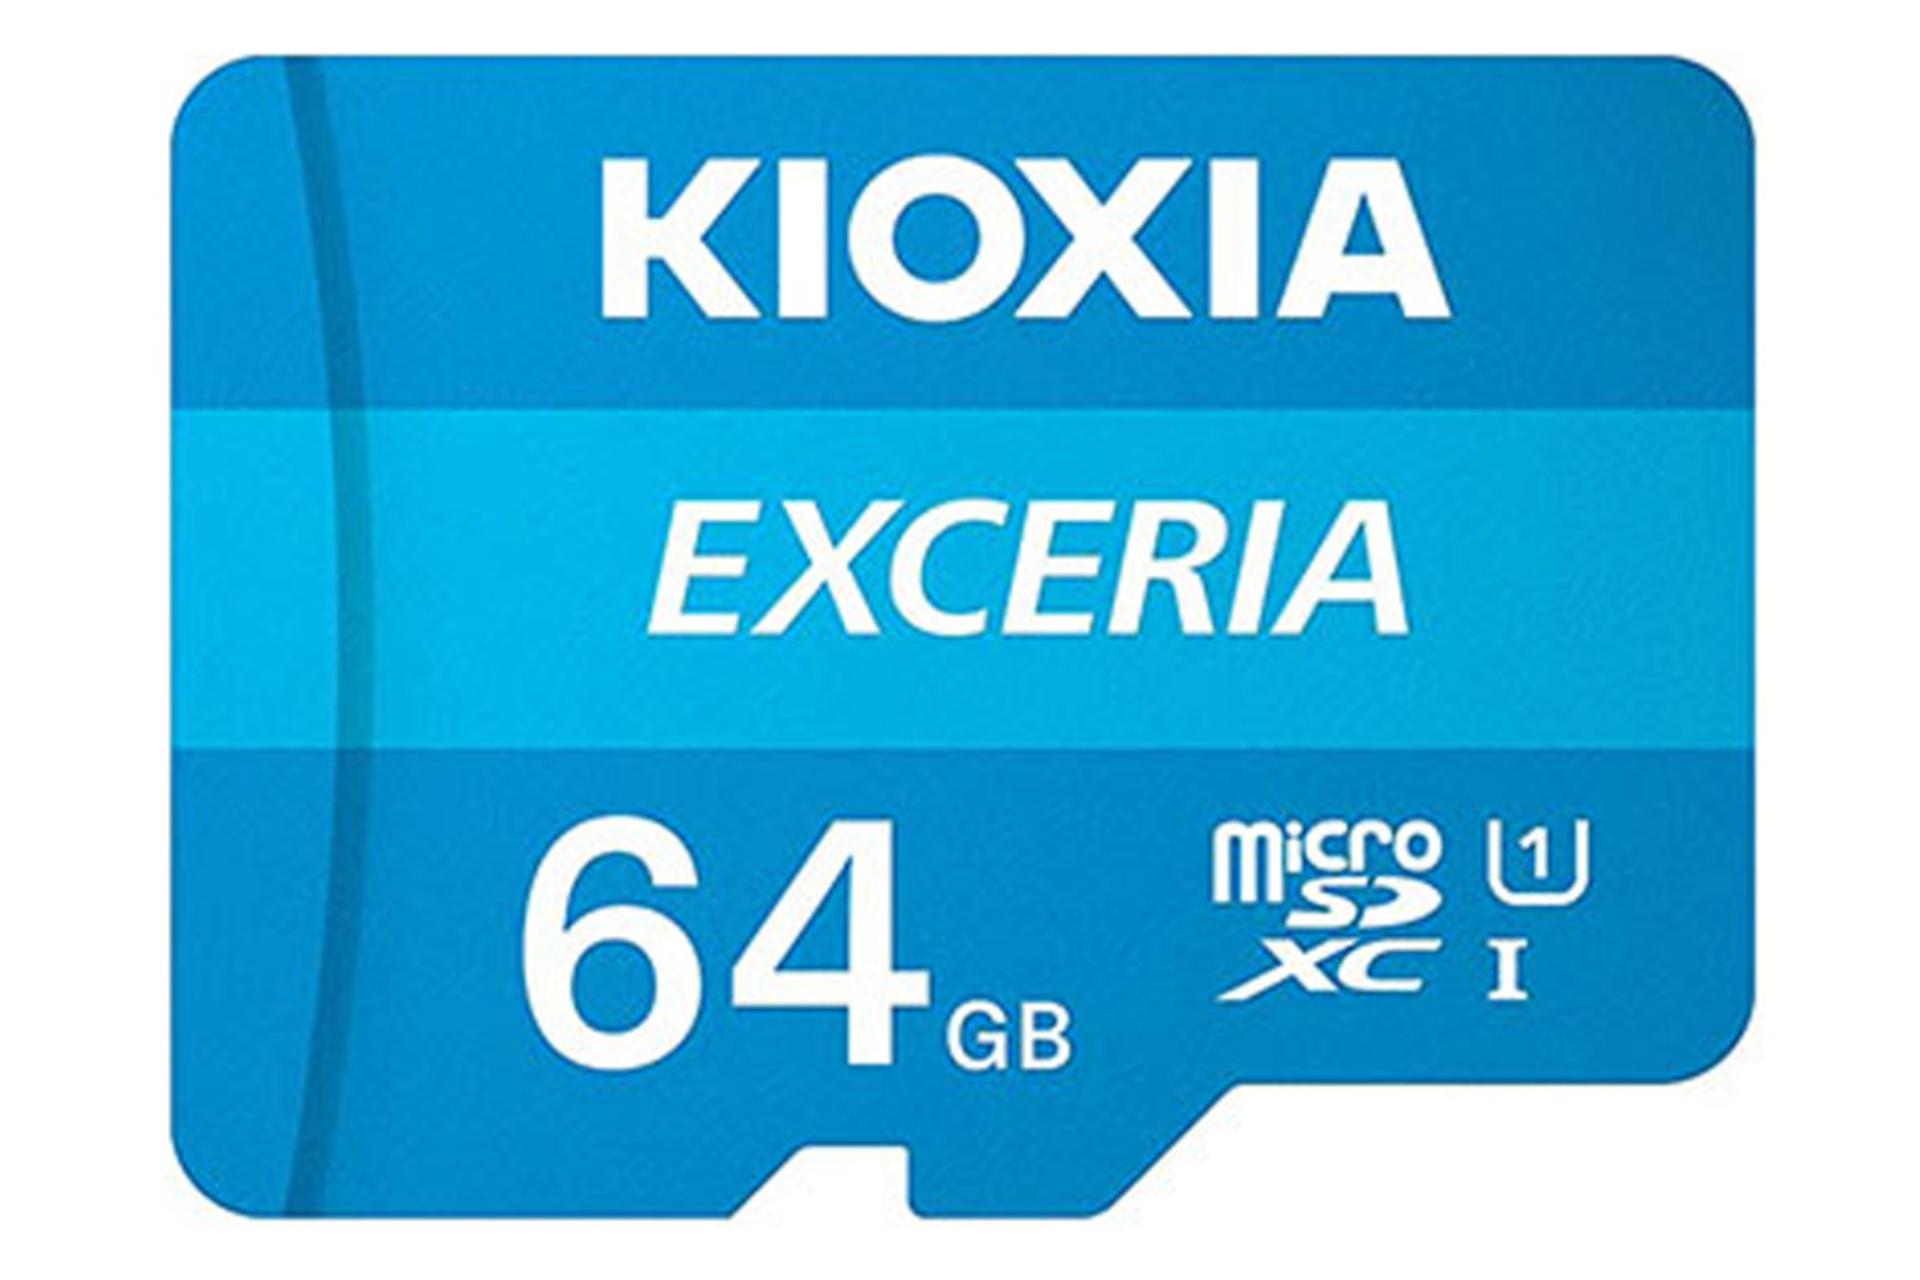 مرجع متخصصين ايران كارت حافظه كيوكسيا microSDXC با ظرفيت 64 گيگابايت مدل EXCERIA كلاس 10